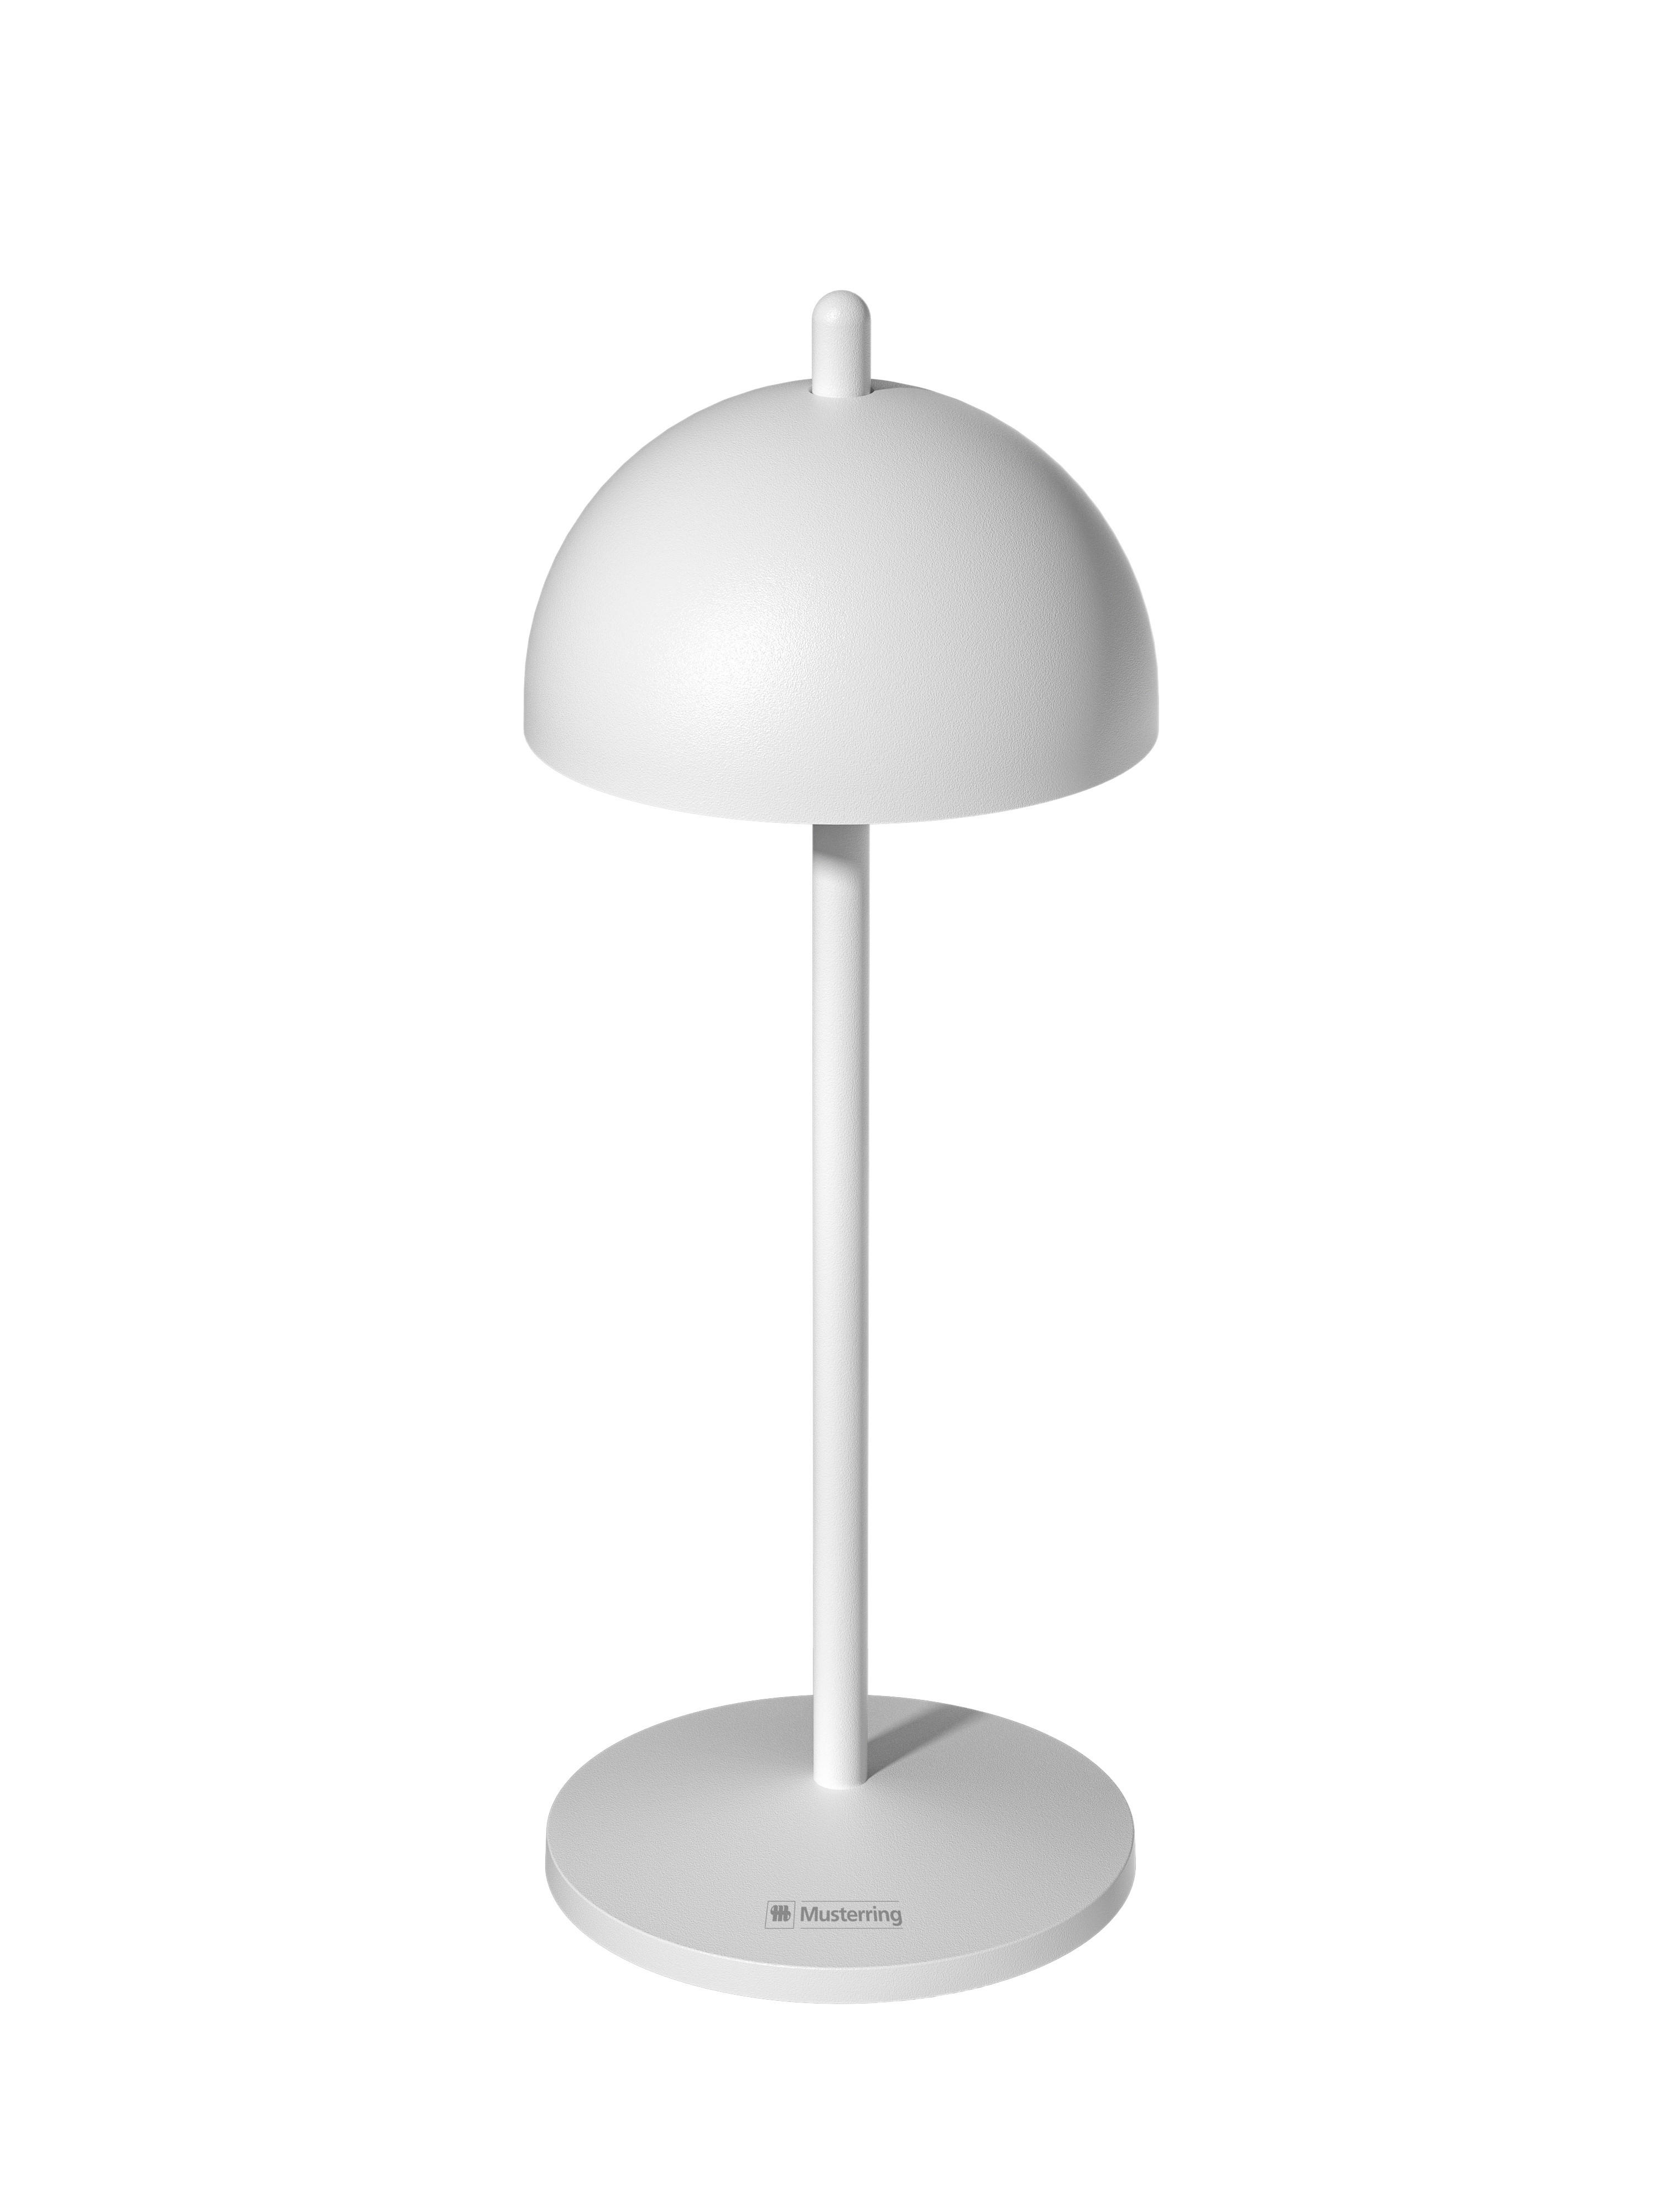 LED AKKU-TISCHLEUCHTE Luna 11/30 cm   - Weiß, Design, Metall (11/30cm) - Musterring